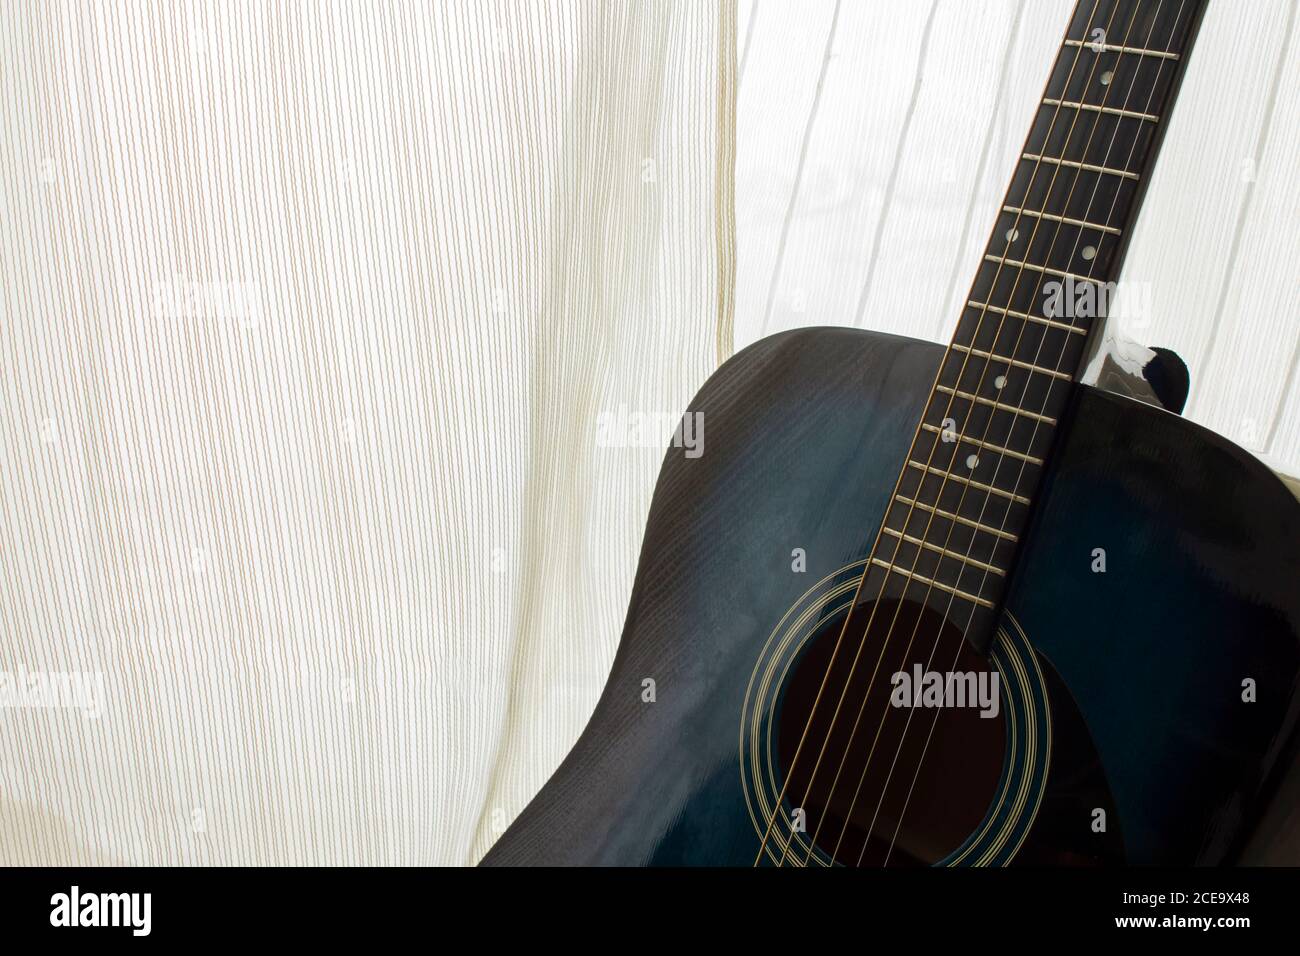 Dettaglio della chitarra classica con profondità di campo Foto Stock